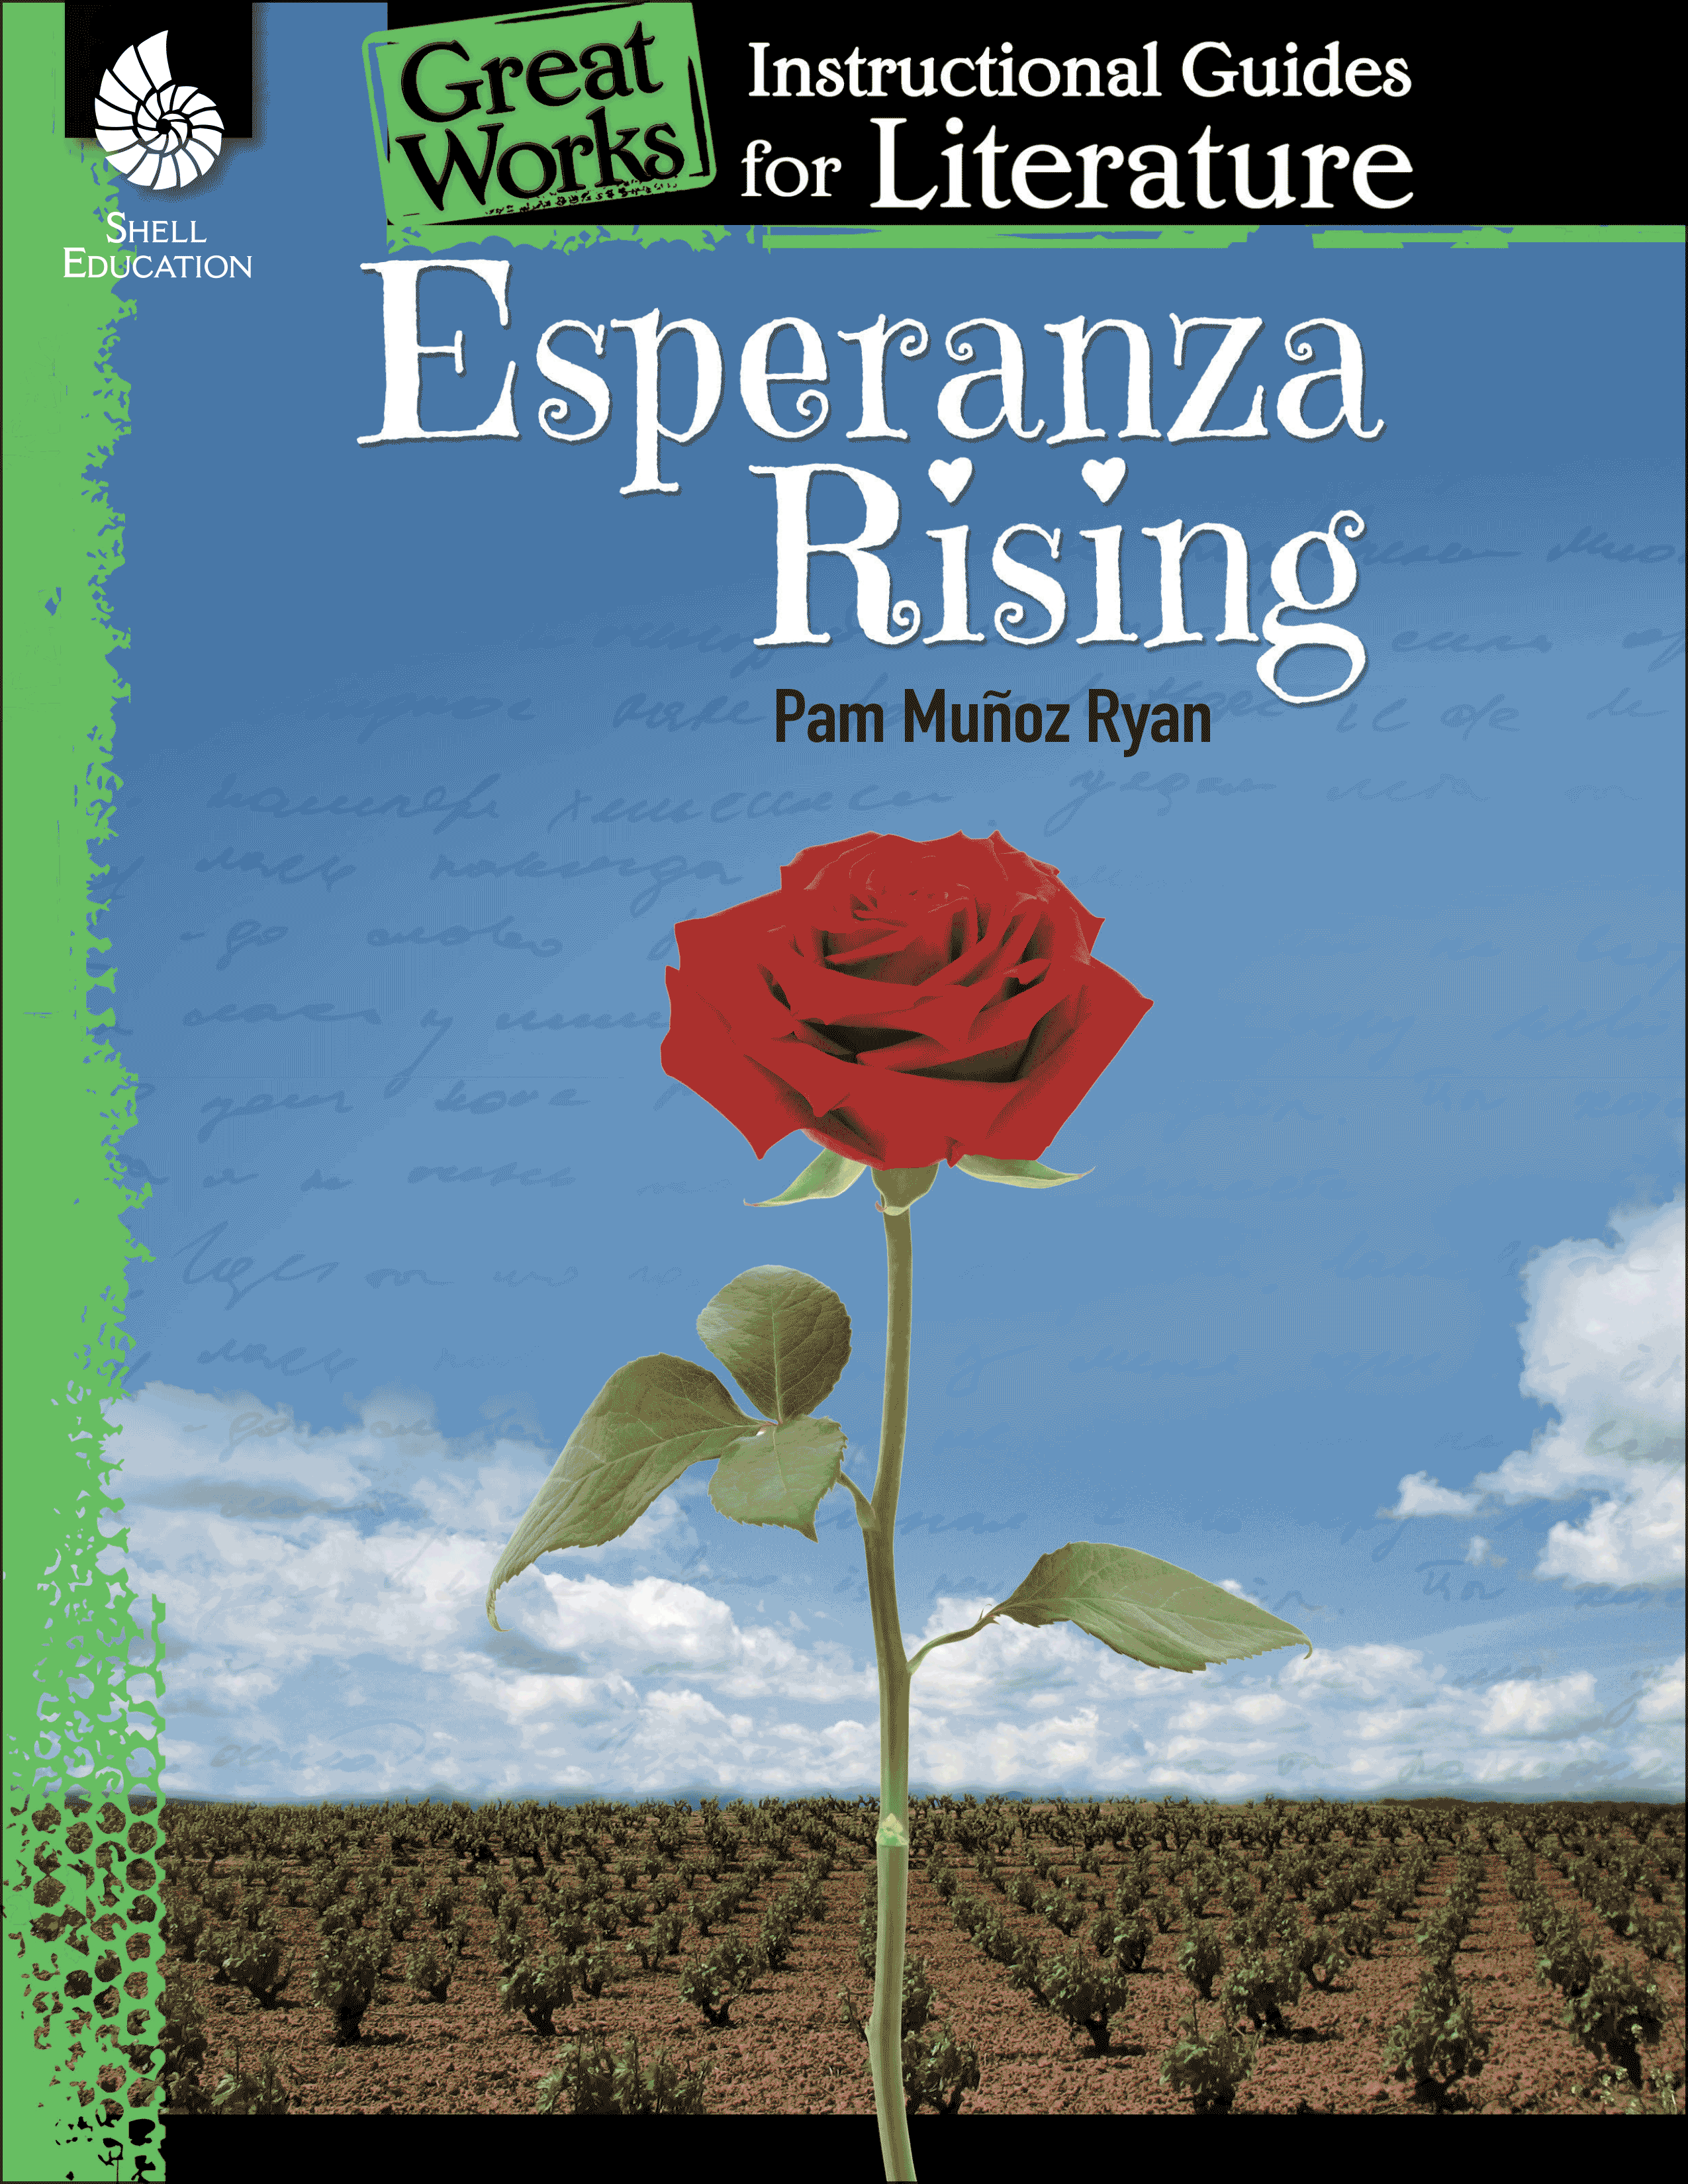 Esperanza Rising: An Instructional Guide for Literature | Teachers